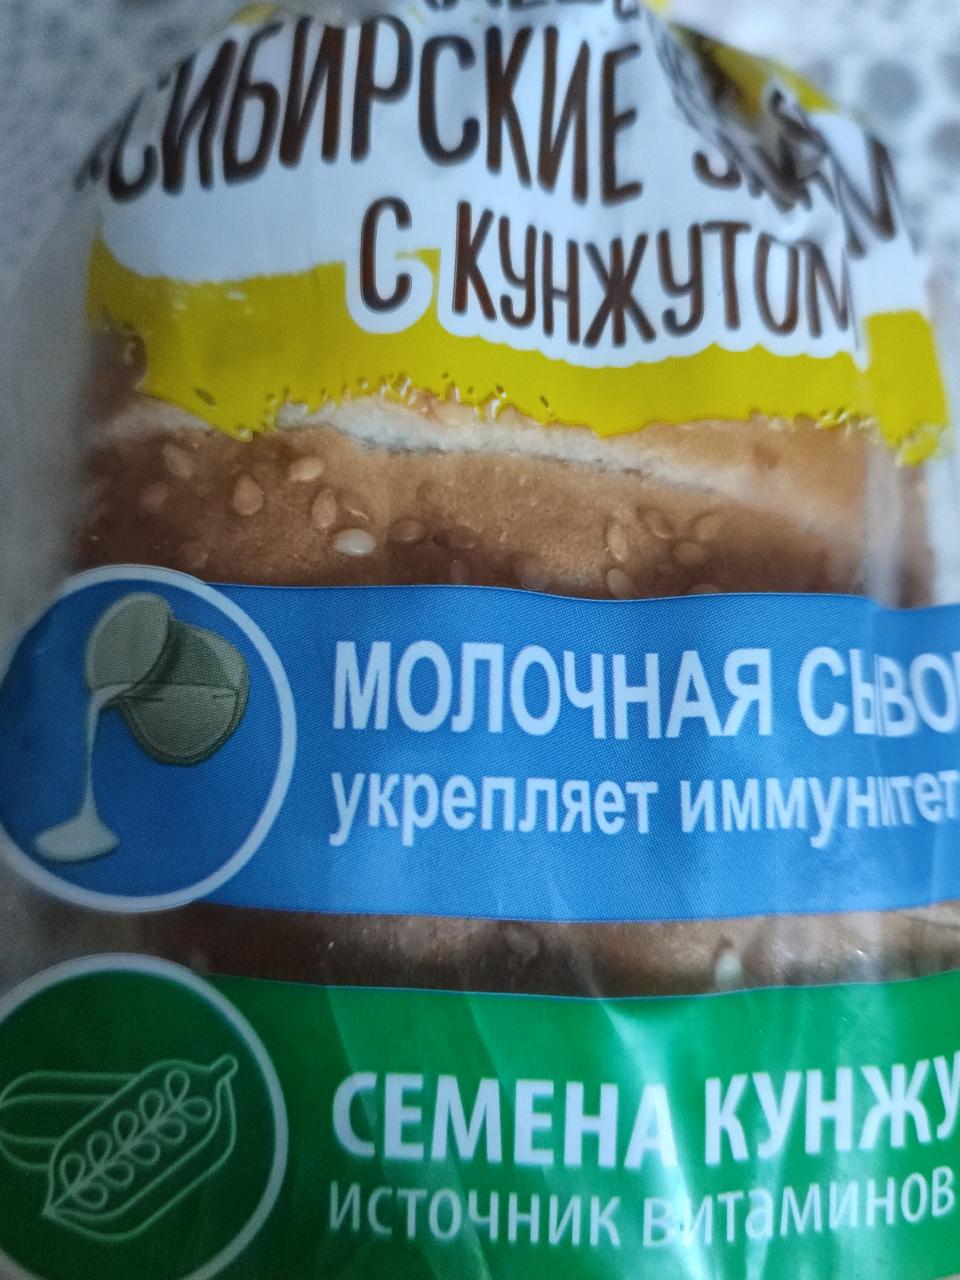 Фото - хлеб с кунжутом Сибирские закрома